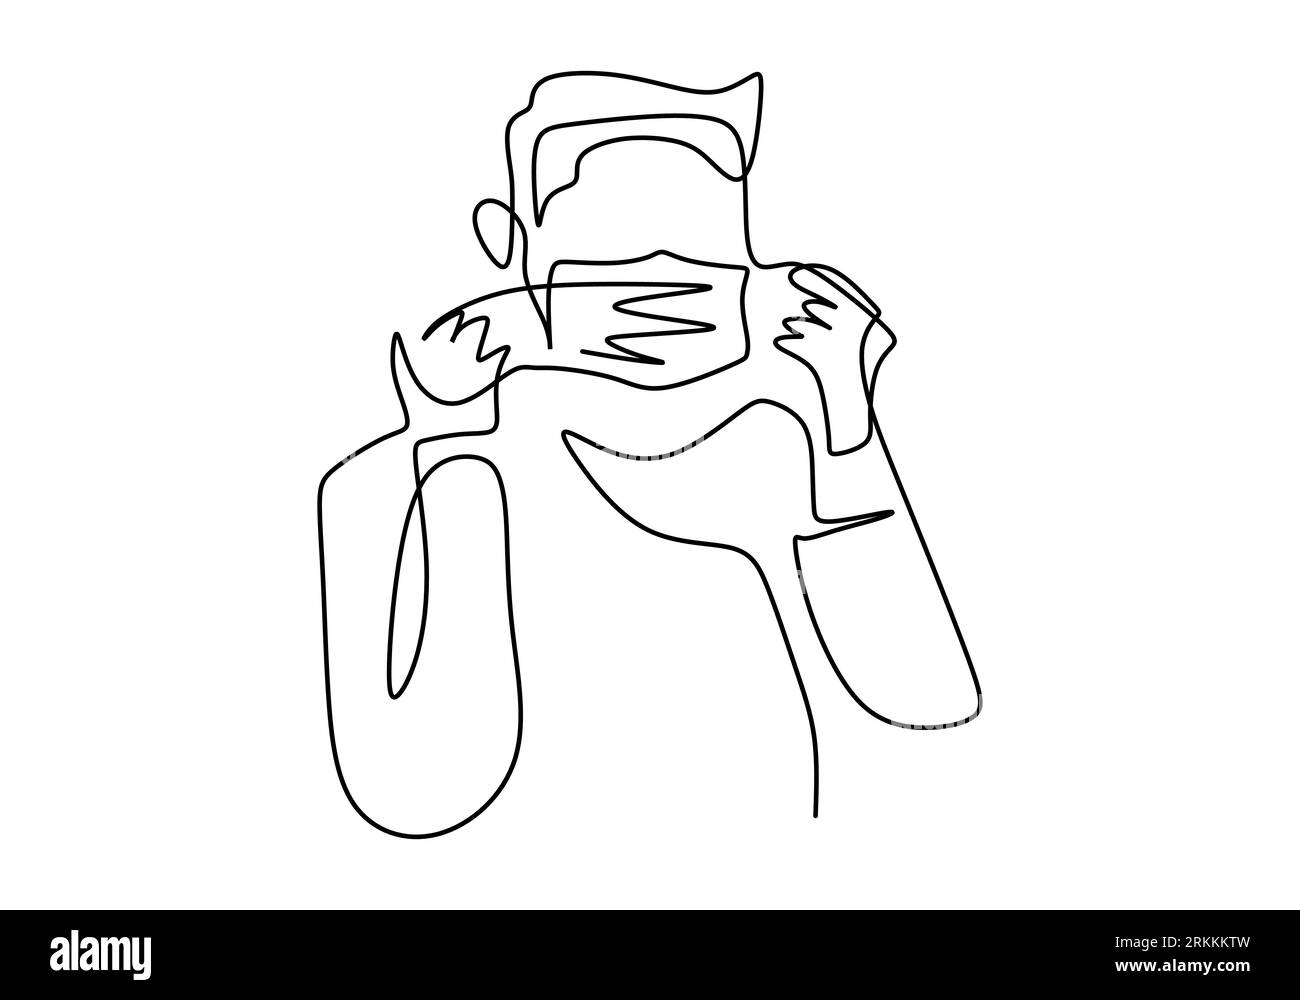 Linea continua disegno di giovane uomo che indossa maschera chirurgica per proteggere la malattia, influenza, inquinamento atmosferico, pandemia, virus. Prevenzione del tema COVID-19. Vettore Illustrazione Vettoriale